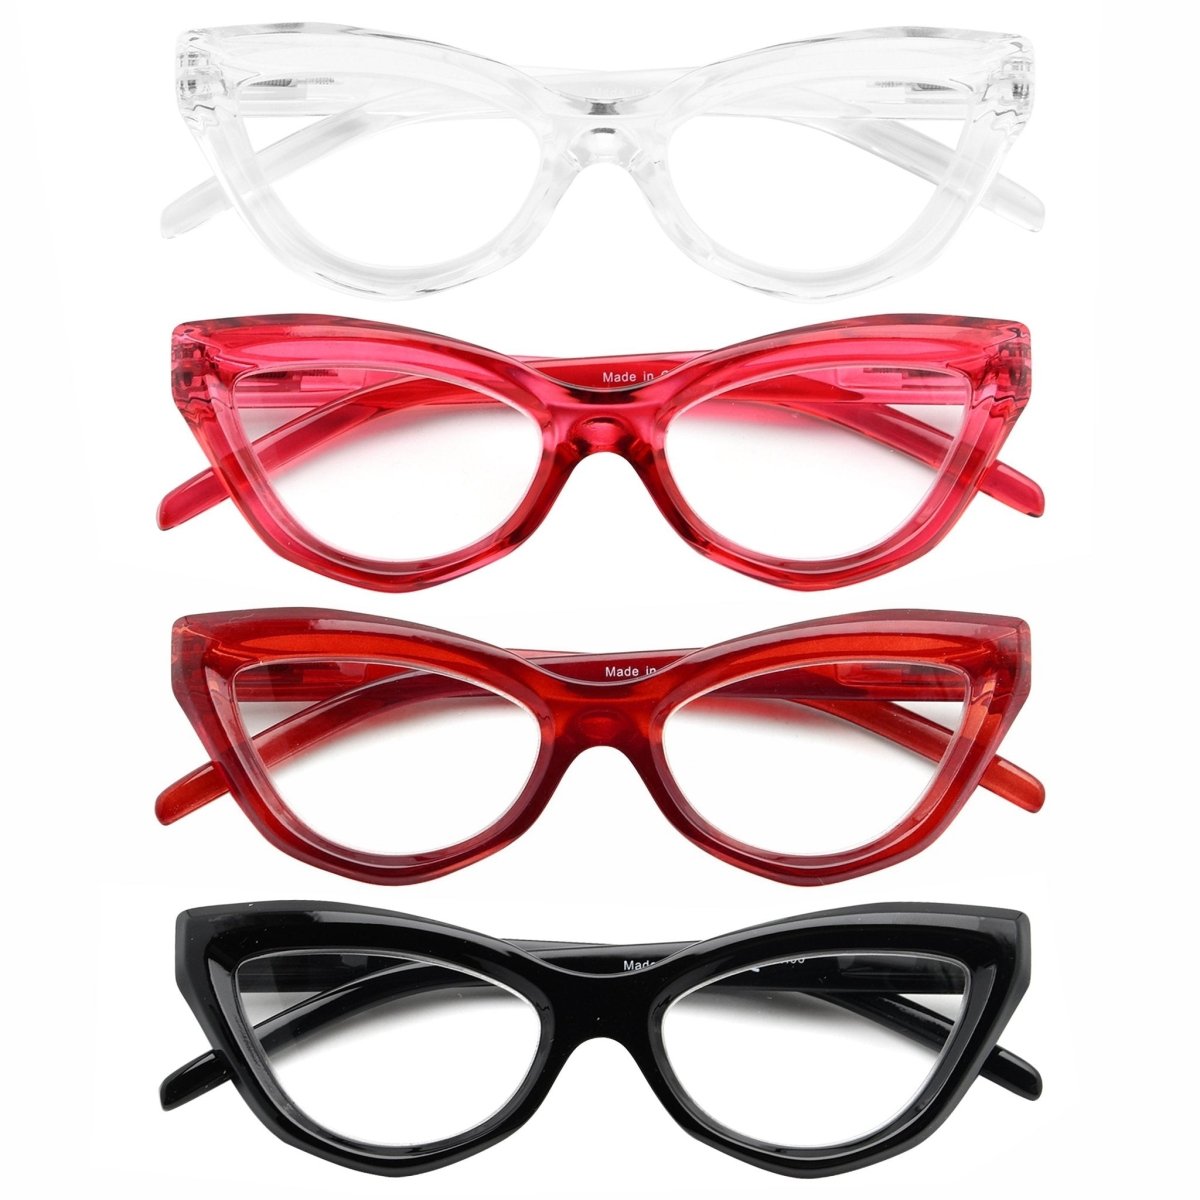 Reading Glasses Stylsih Cat-eye Magnifying Specs 4 Pack for Women ...